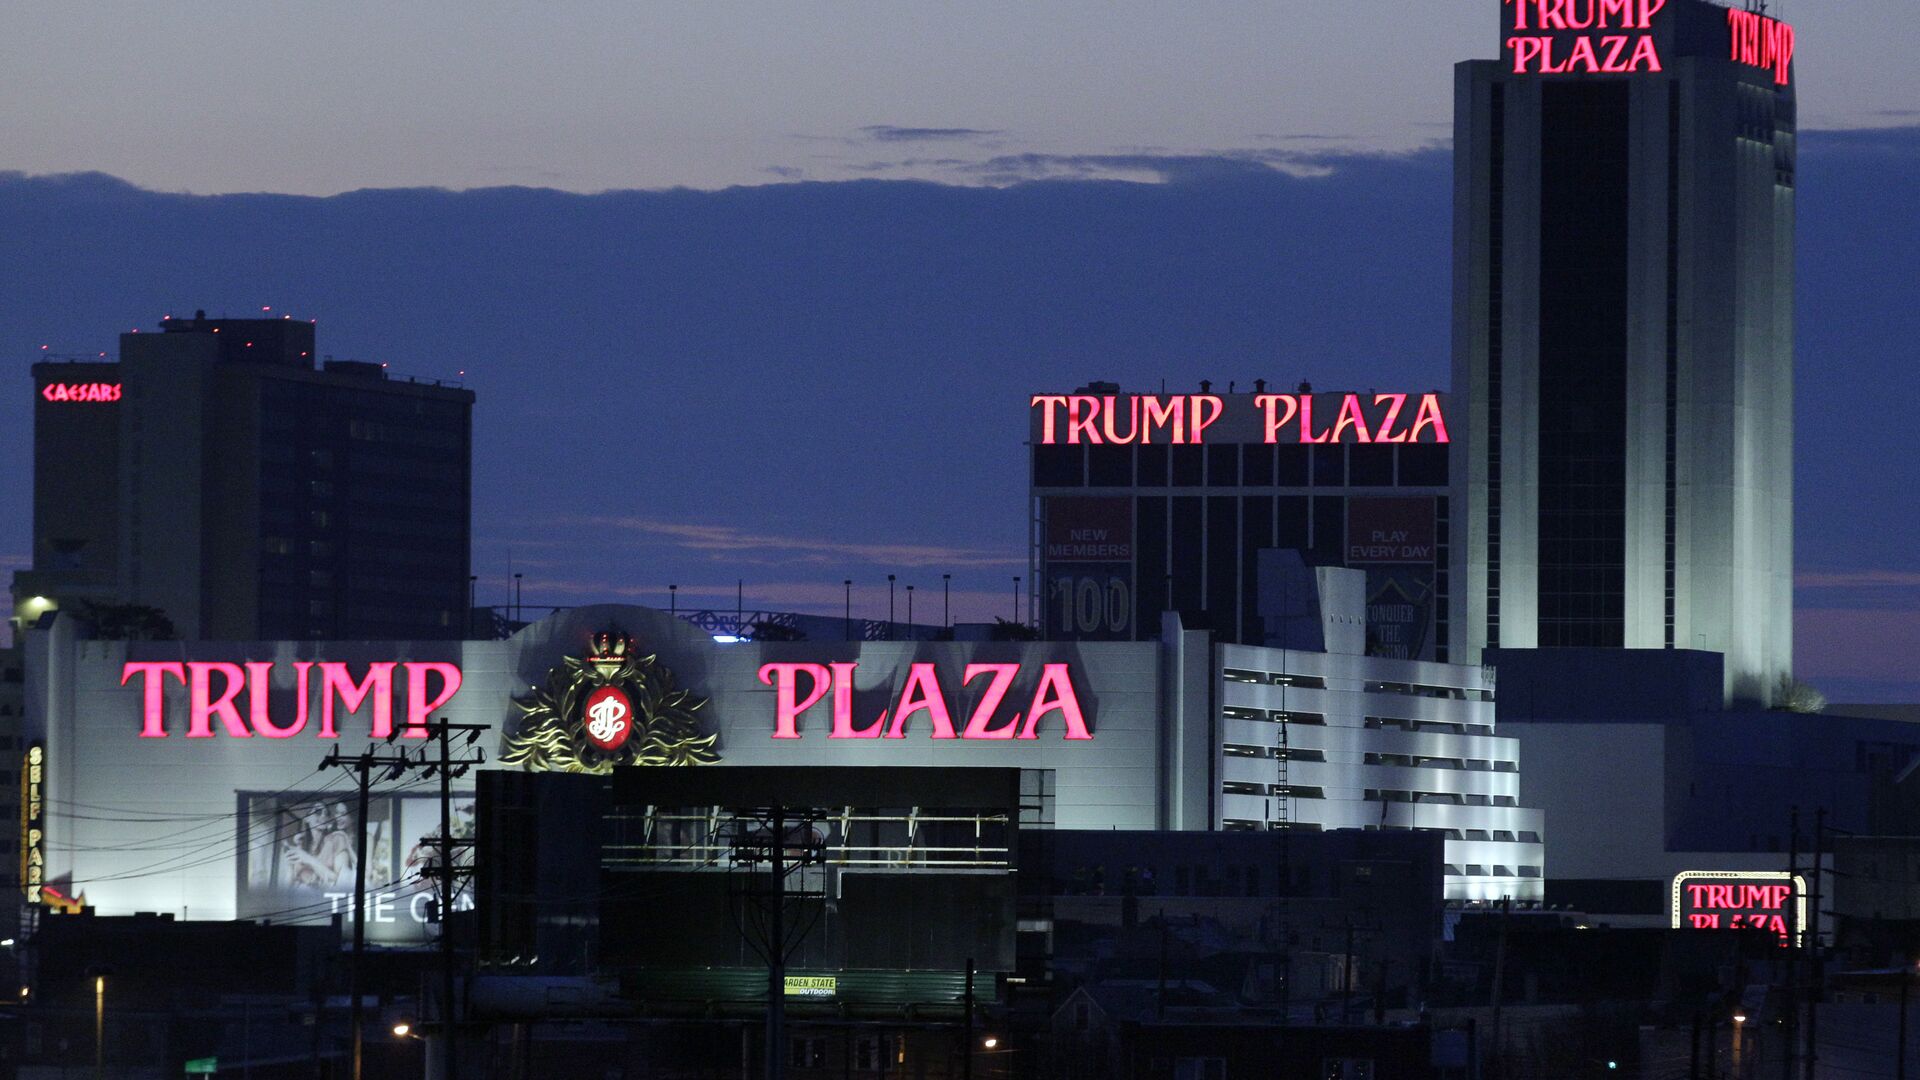 Отель и казино Trump Plaza в Атлантик-Сити - РИА Новости, 1920, 20.02.2021